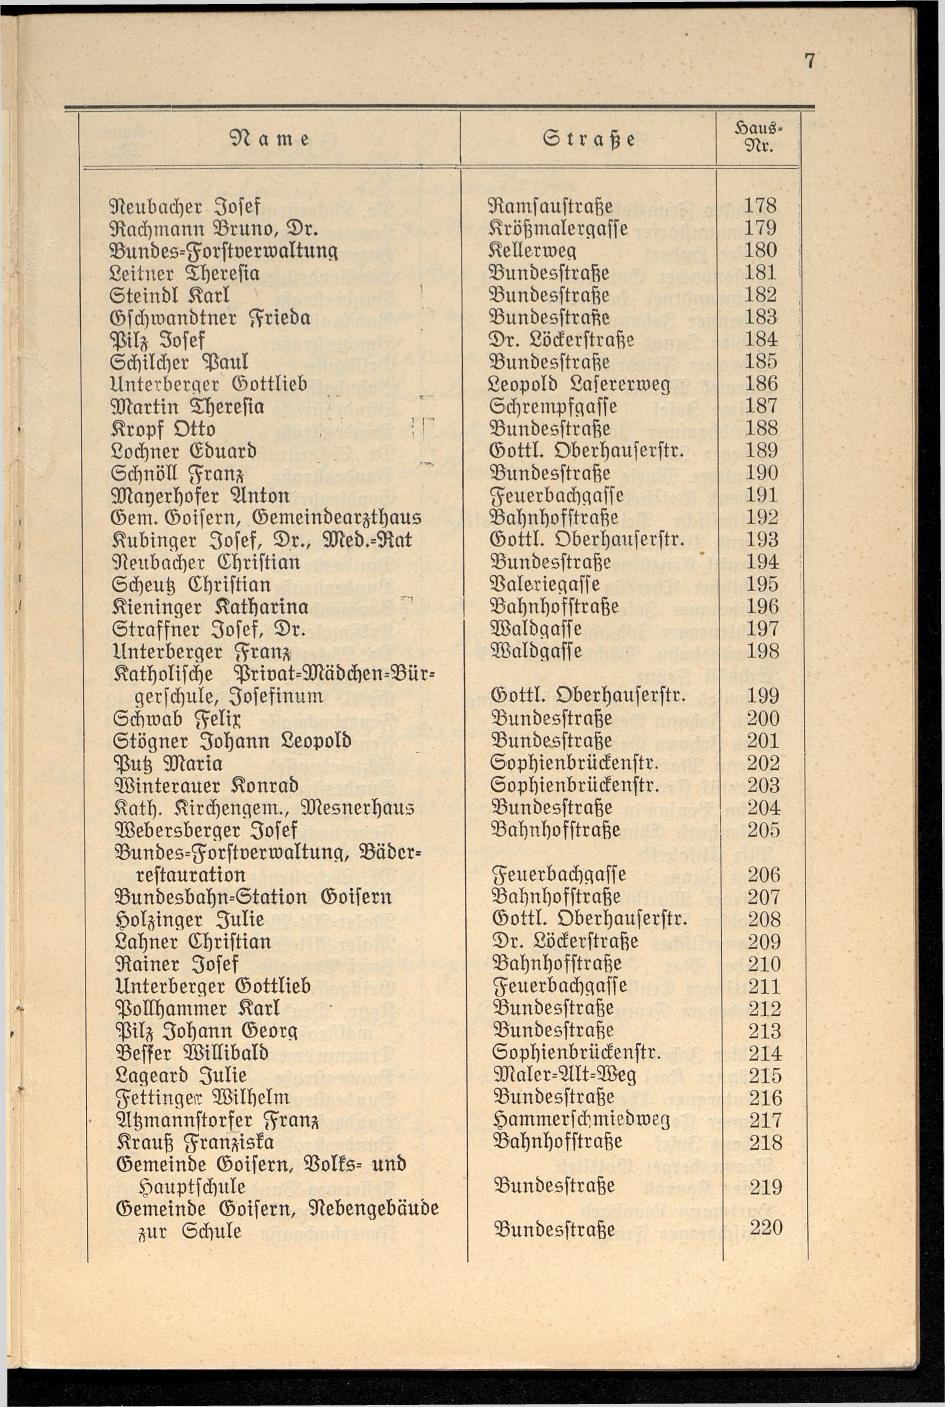 Häuser-Verzeichnis der Gemeinde Goisern nach dem Stande von Juli 1927 - Seite 13